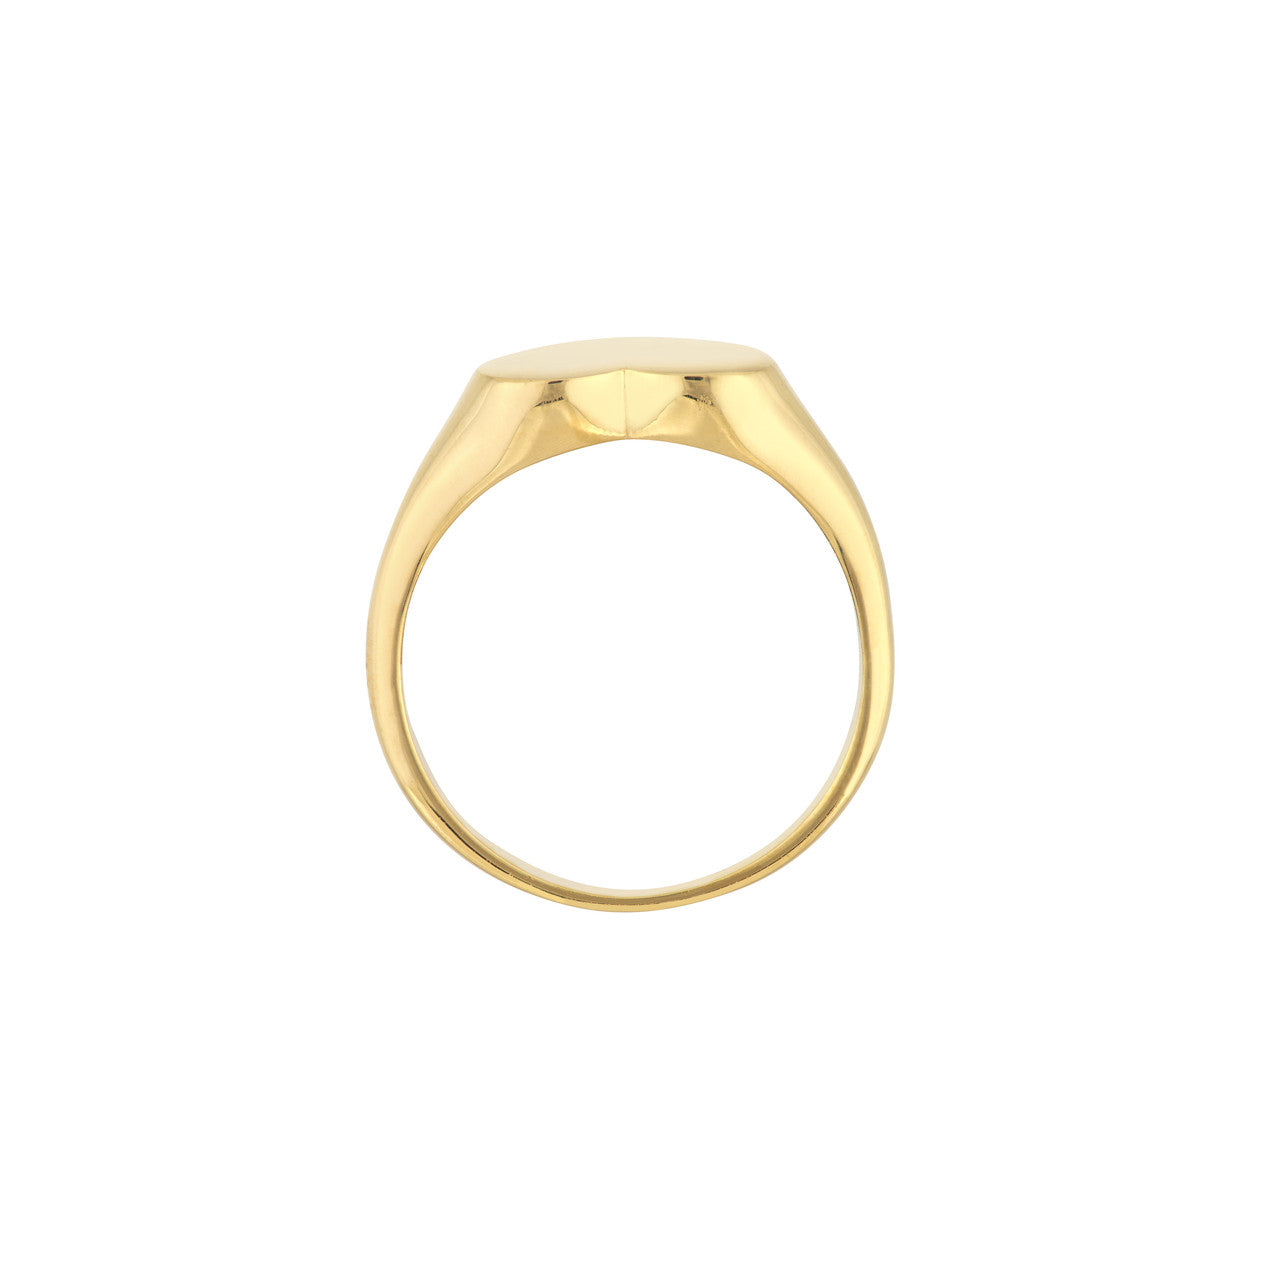 14k Gold Heart Ring